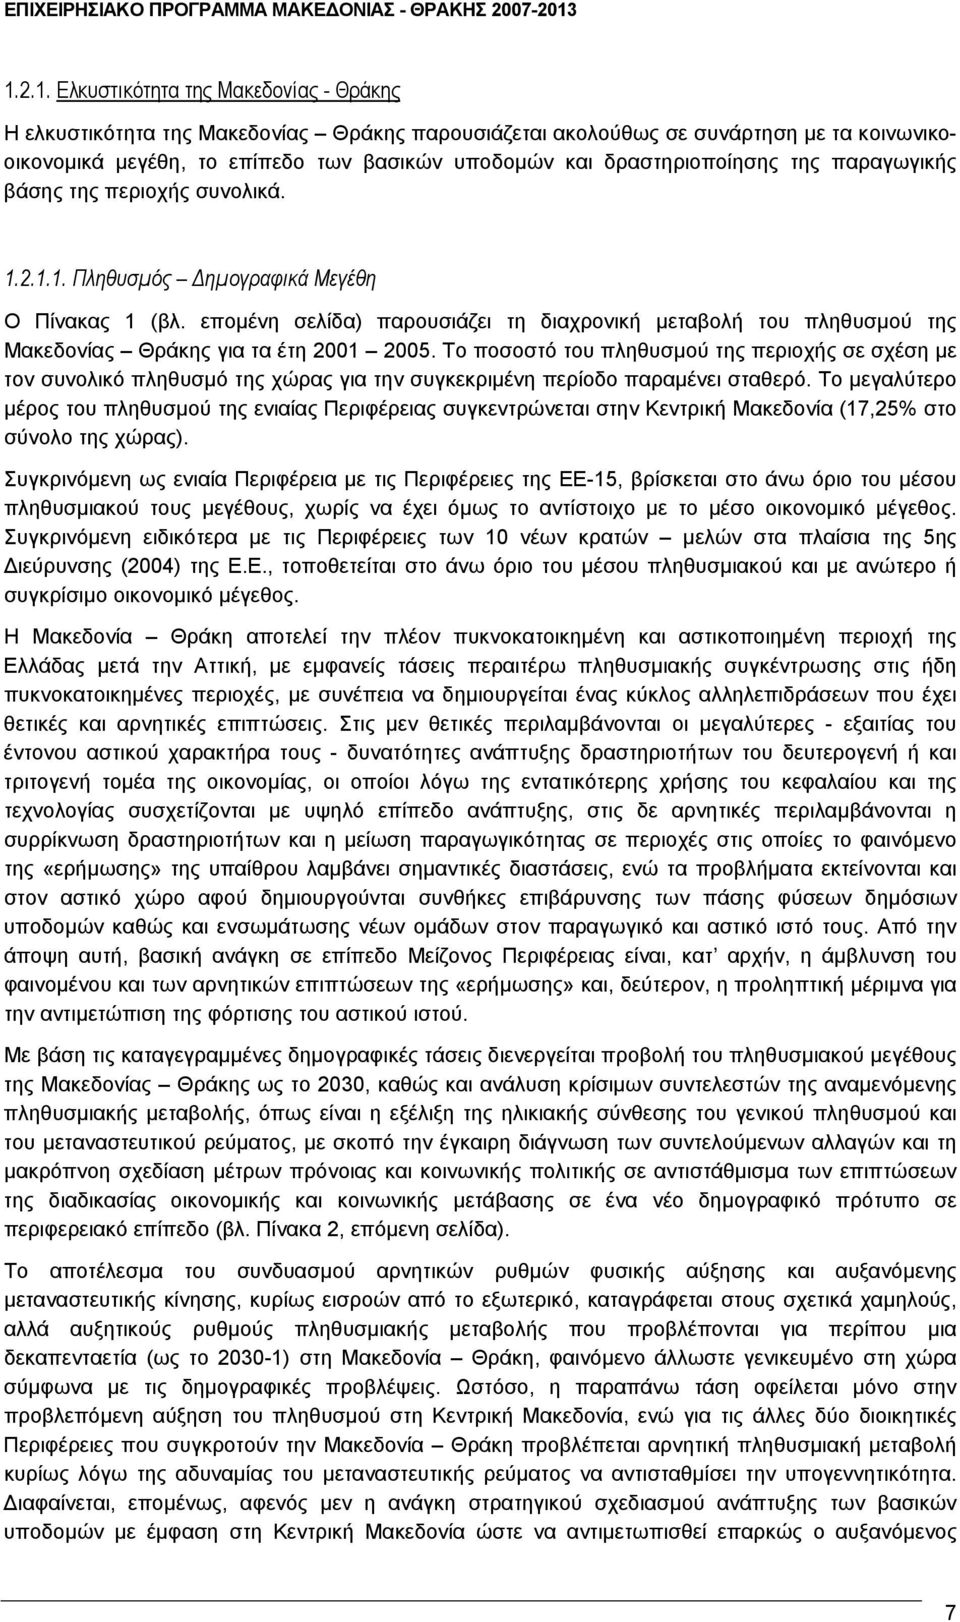 εποµένη σελίδα) παρουσιάζει τη διαχρονική µεταβολή του πληθυσµού της Μακεδονίας Θράκης για τα έτη 2001 2005.